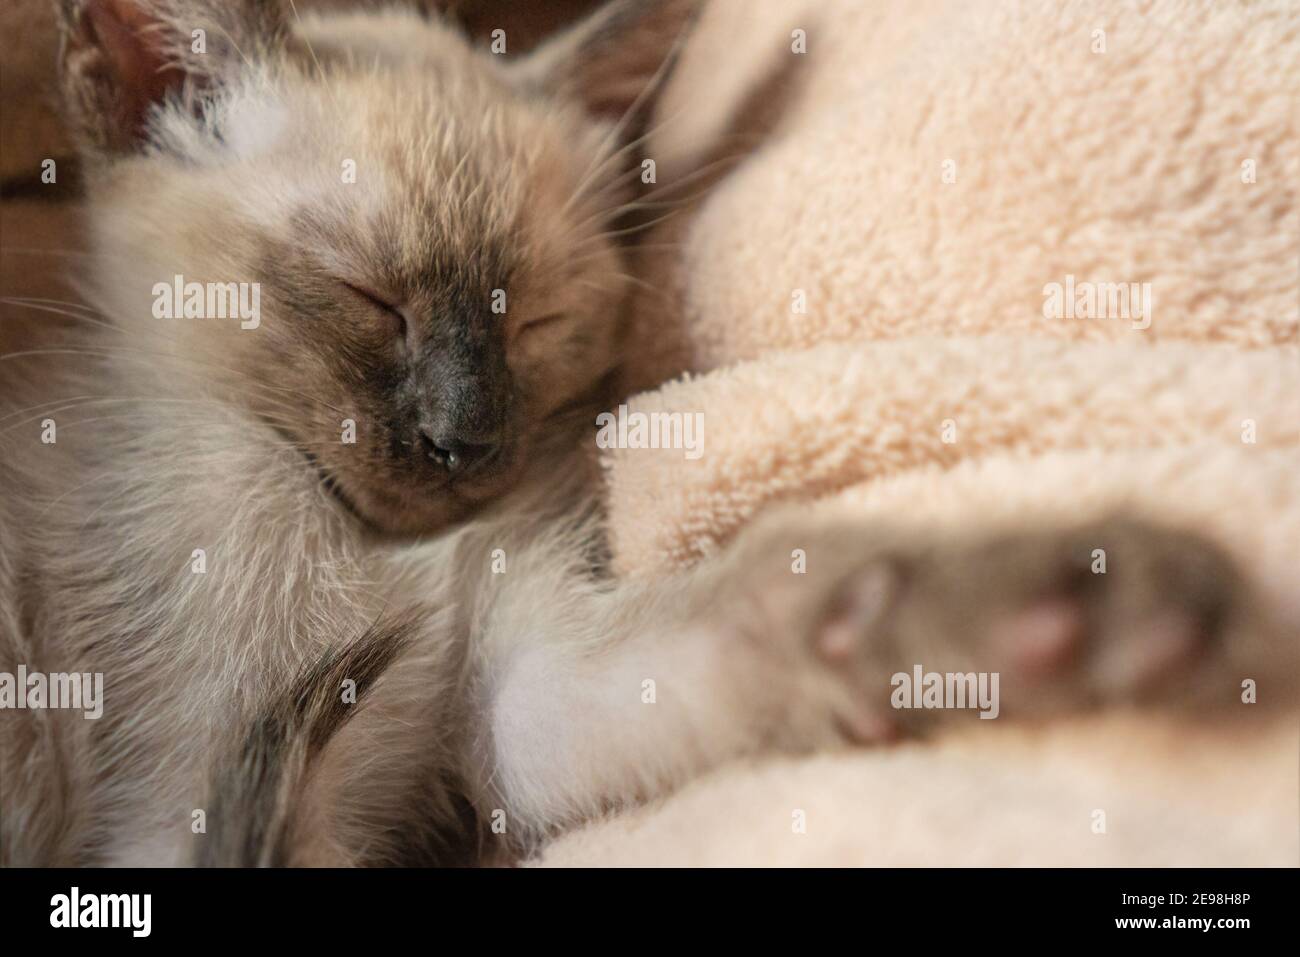 Siam Kätzchen schlafen. Reinrassige sechs Wochen alte Thai Katze mit blauen mandelförmigen Augen auf beigem Korb Hintergrund. Wichien Maat Kitten Stockfoto